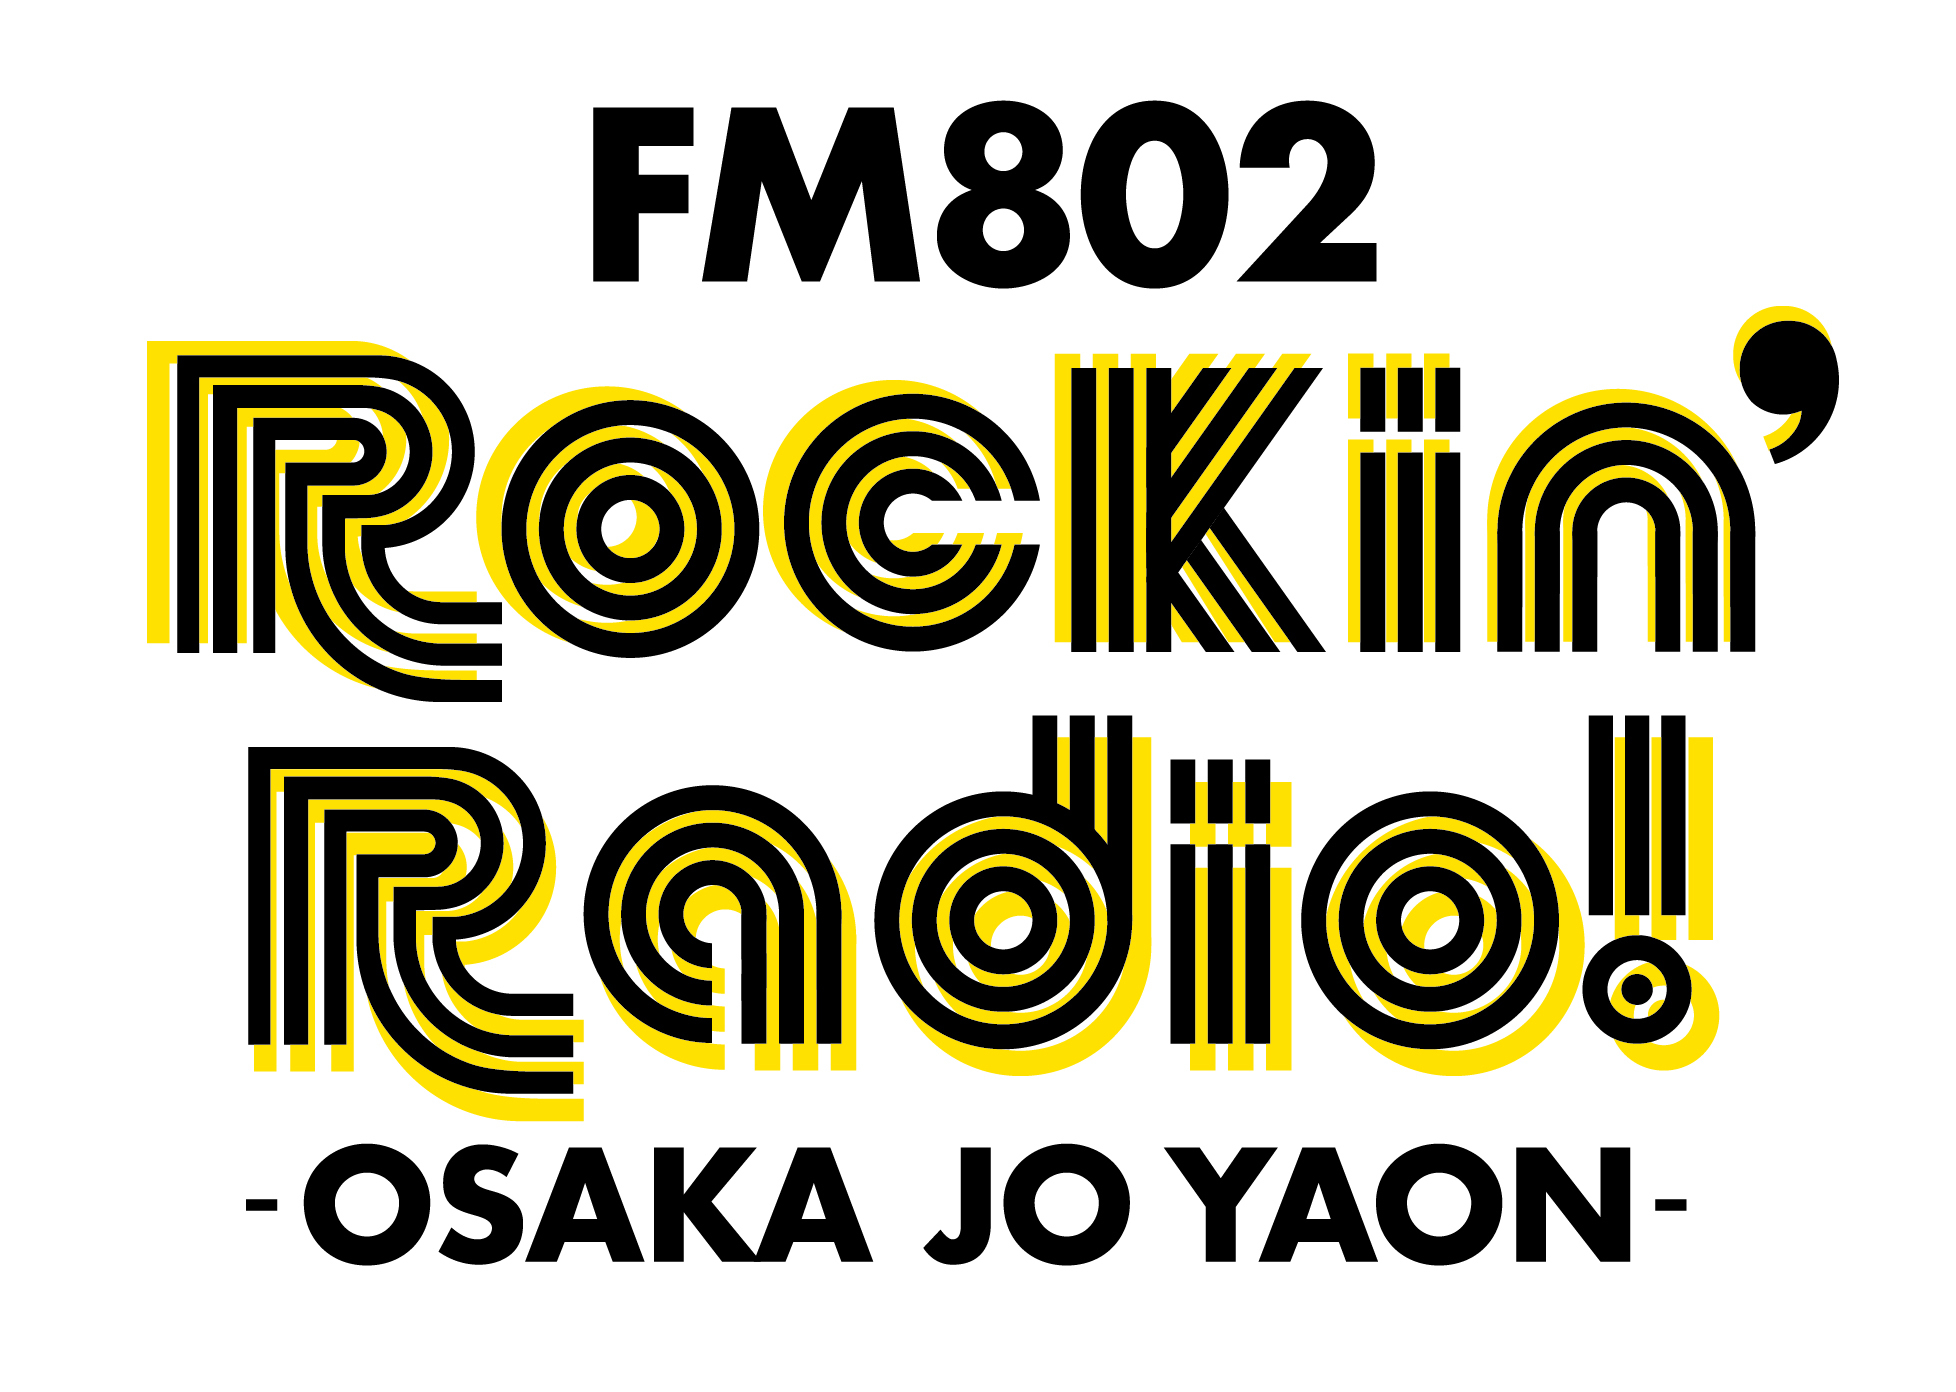 『FM802 Rockin’Radio! -OSAKA JO YAON-』